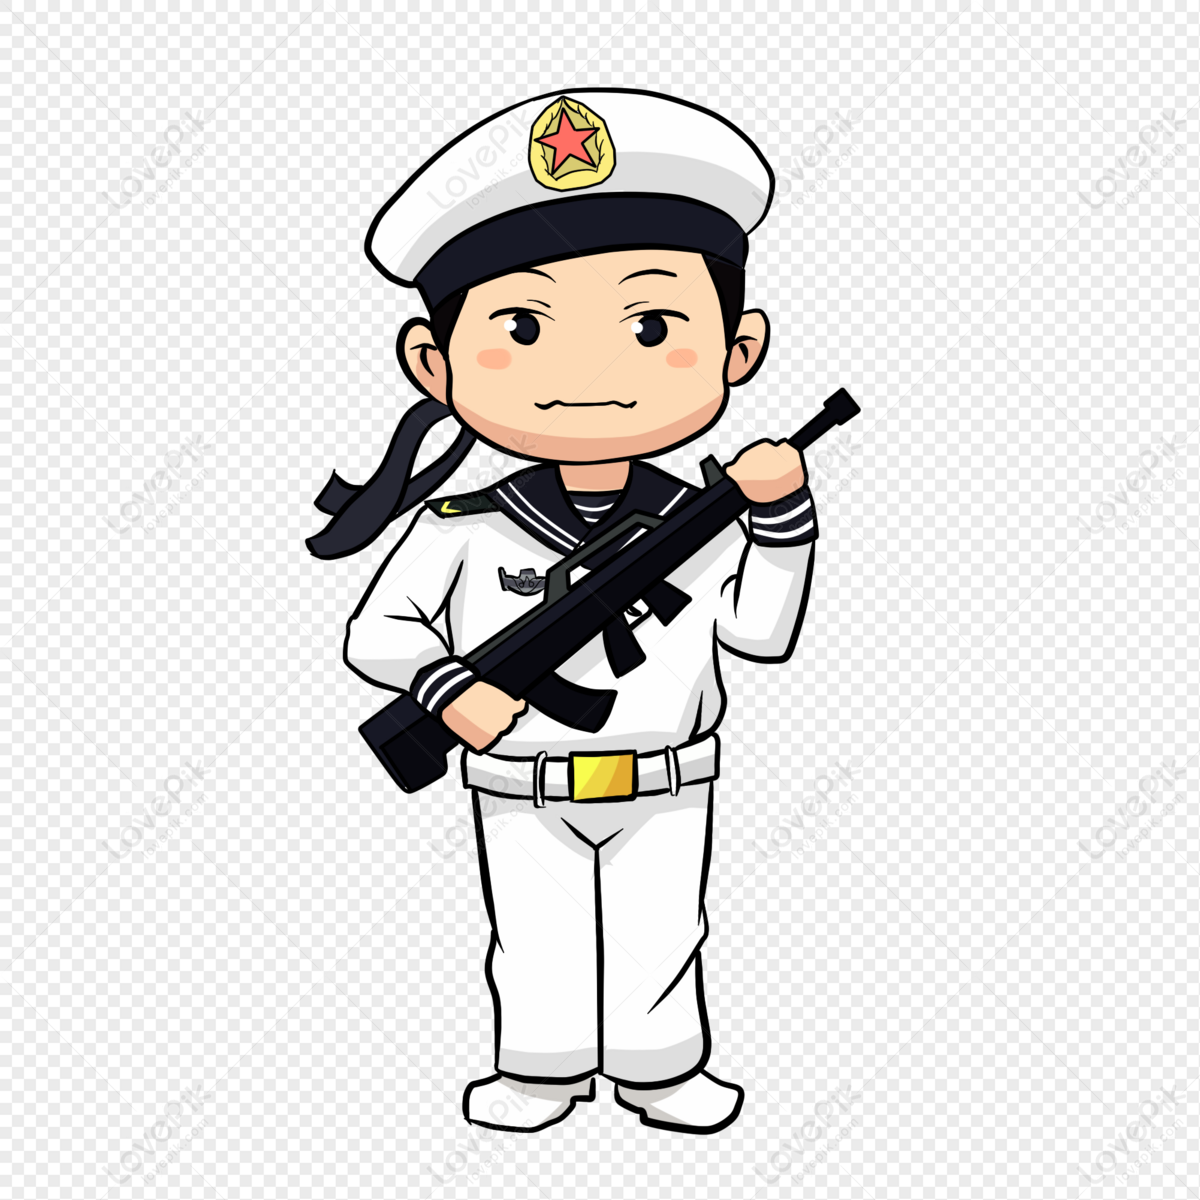 Hải Quân Trung Quốc: Hãy khám phá bức ảnh về Hải Quân Trung Quốc để tìm hiểu về sức mạnh và khả năng chiến đấu của họ trên biển cả. Những chiếc tàu chiến và máy bay đầy uy lực sẽ khiến bạn choáng ngợp!